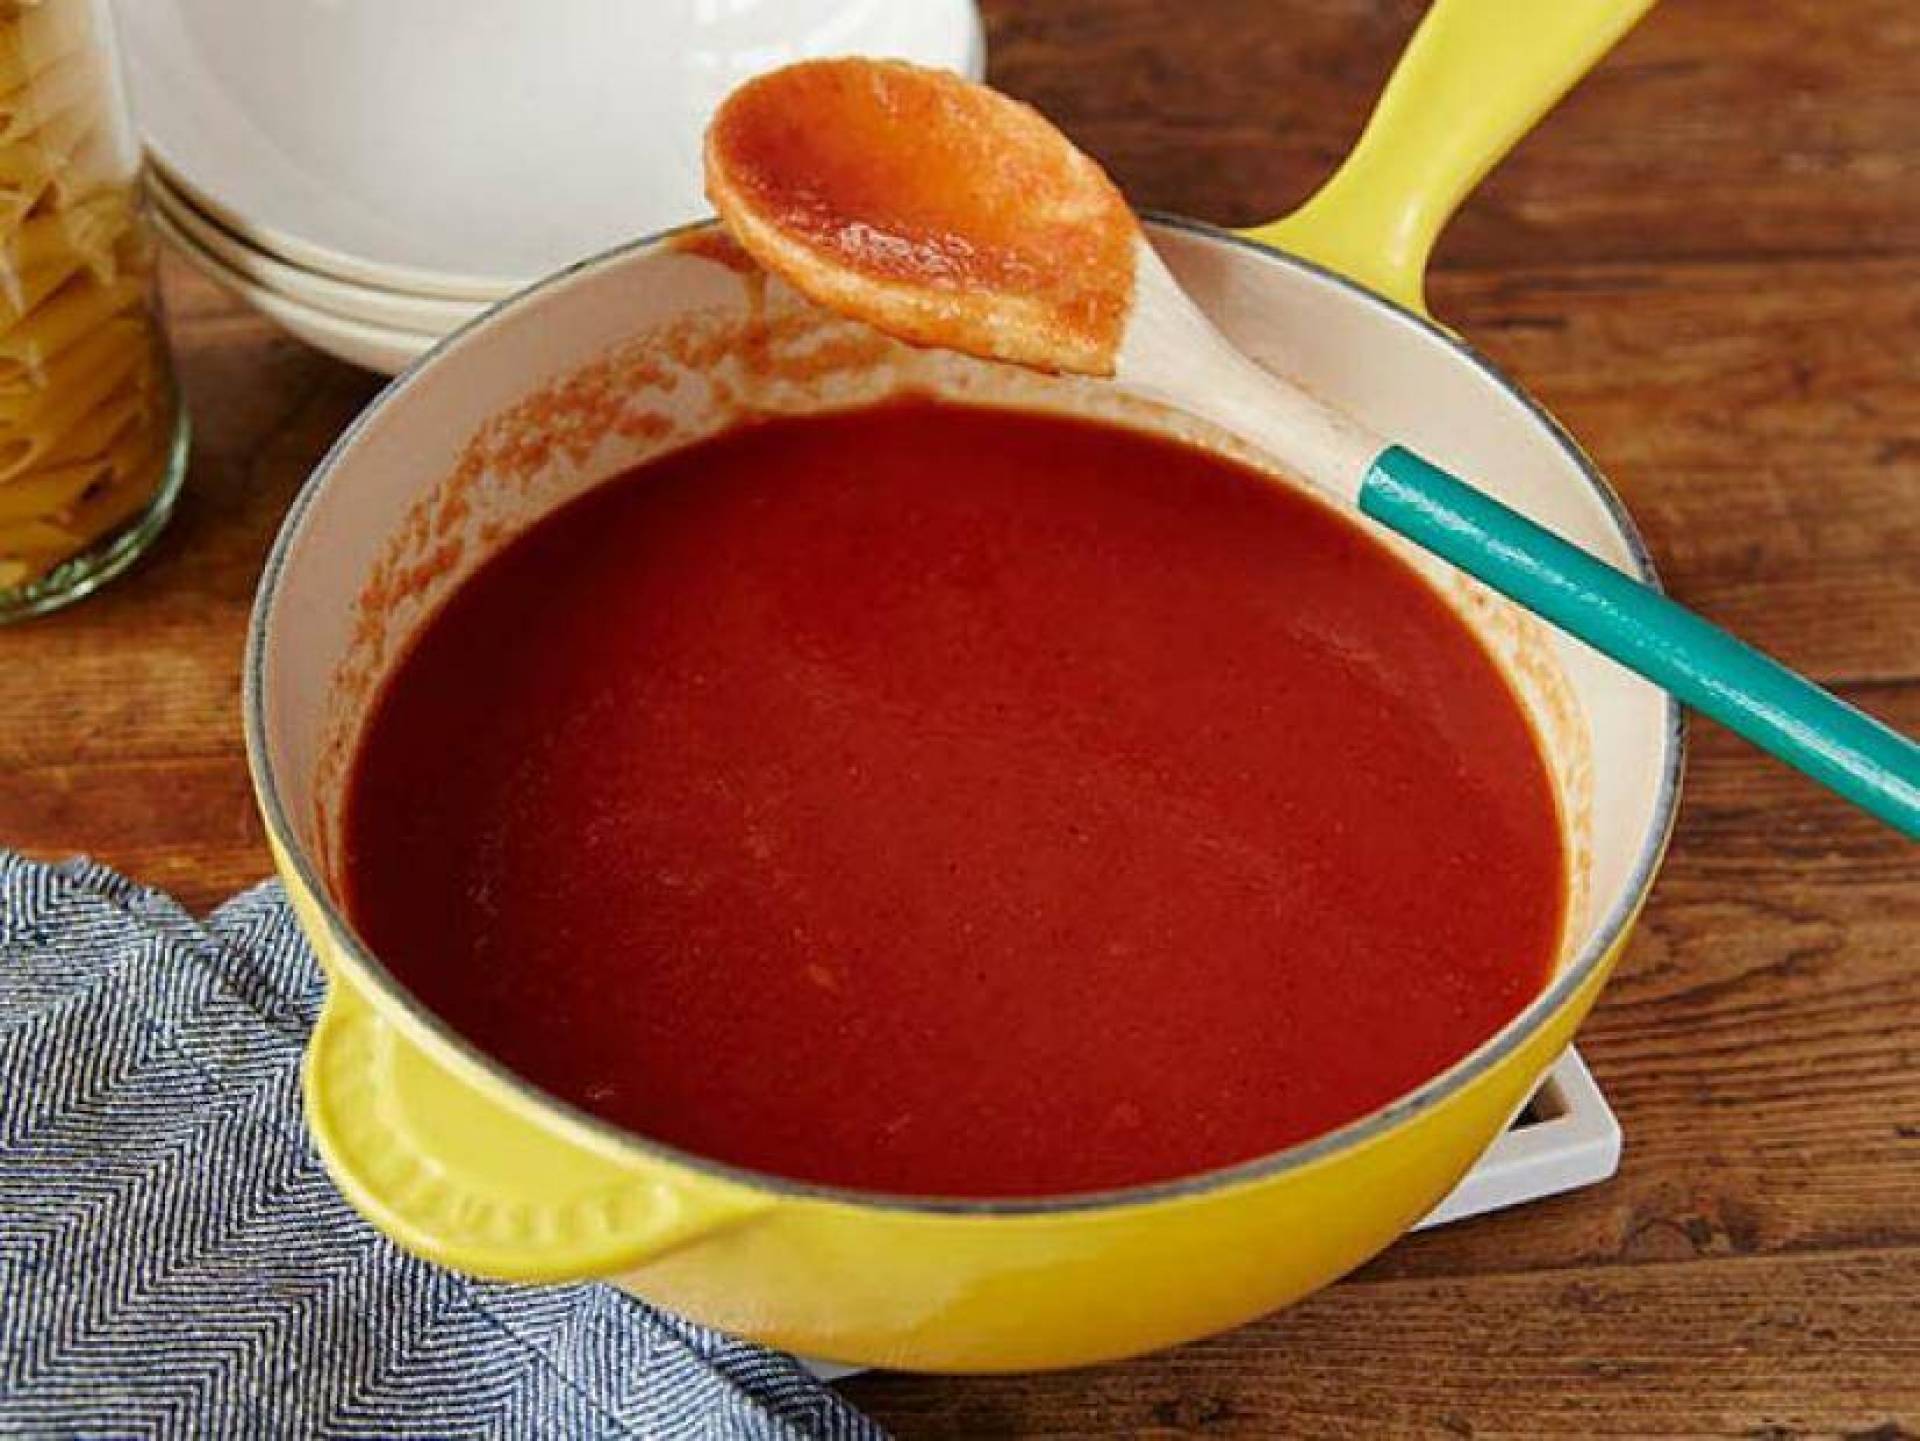 Sause. Соус красный основной. Соус для лазаньи. Томатный соус. Томатная паста для лазаньи.